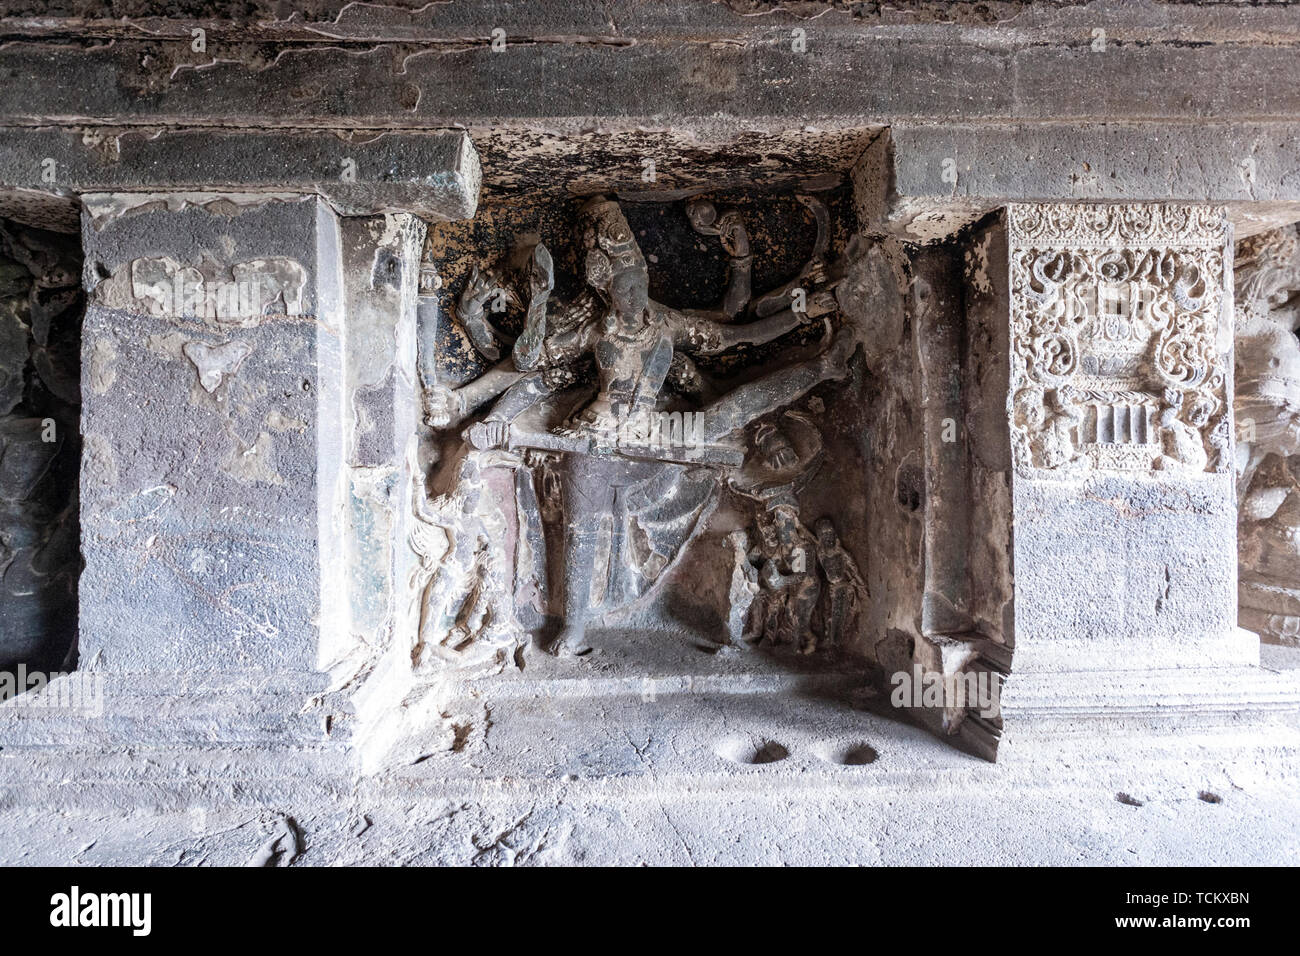 Cave Grotte, 15 monuments hindous, les grottes d'Ellora, rock-cut temple-monastère, Aurangabad grottes du Maharashtra, en Inde. Banque D'Images